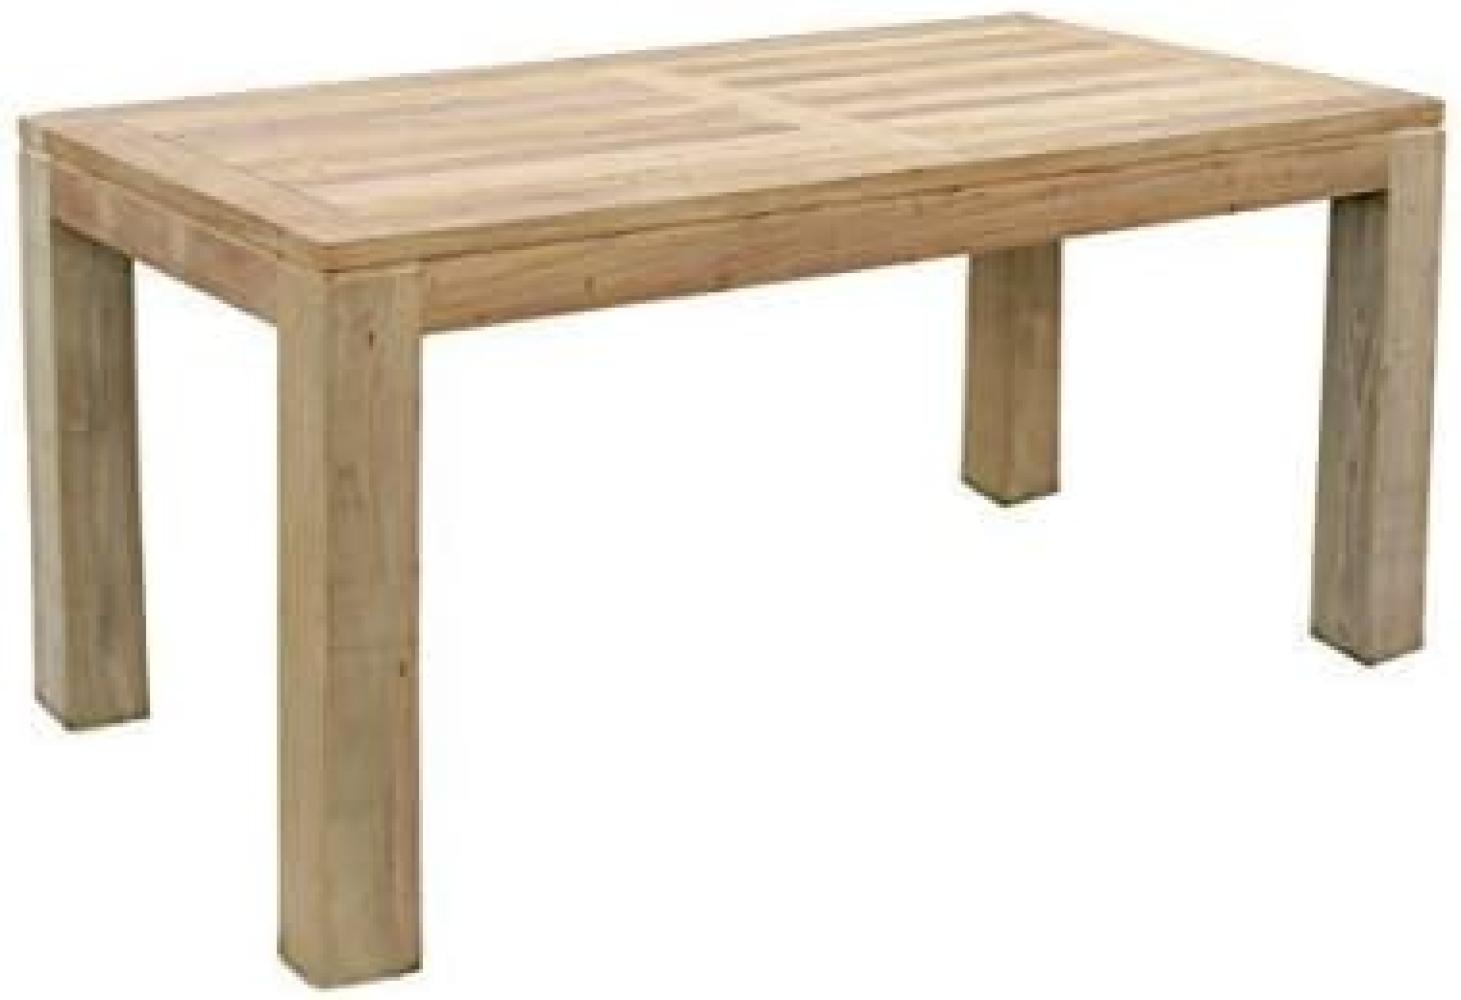 Massiver Premium Teak Tisch rechteckig Gartentisch Gartenmöbel Teakmöbel 180 cm Bild 1